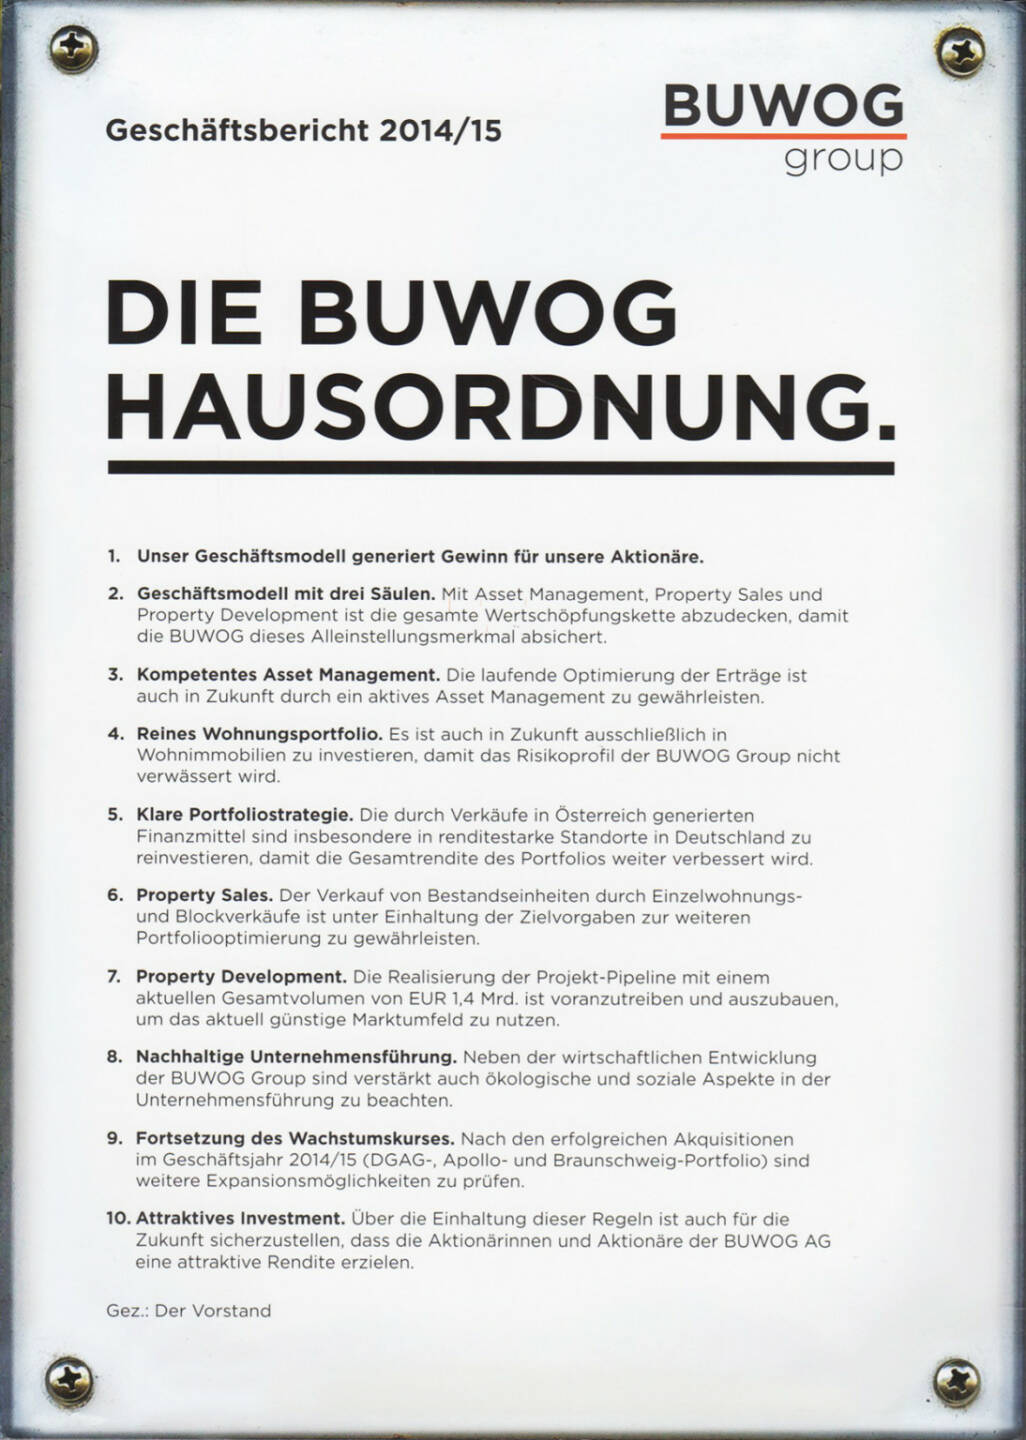 Buwog Geschäftsbericht 2014/15 - http://boerse-social.com/financebooks/show/buwog_geschaftsbericht_2014-15